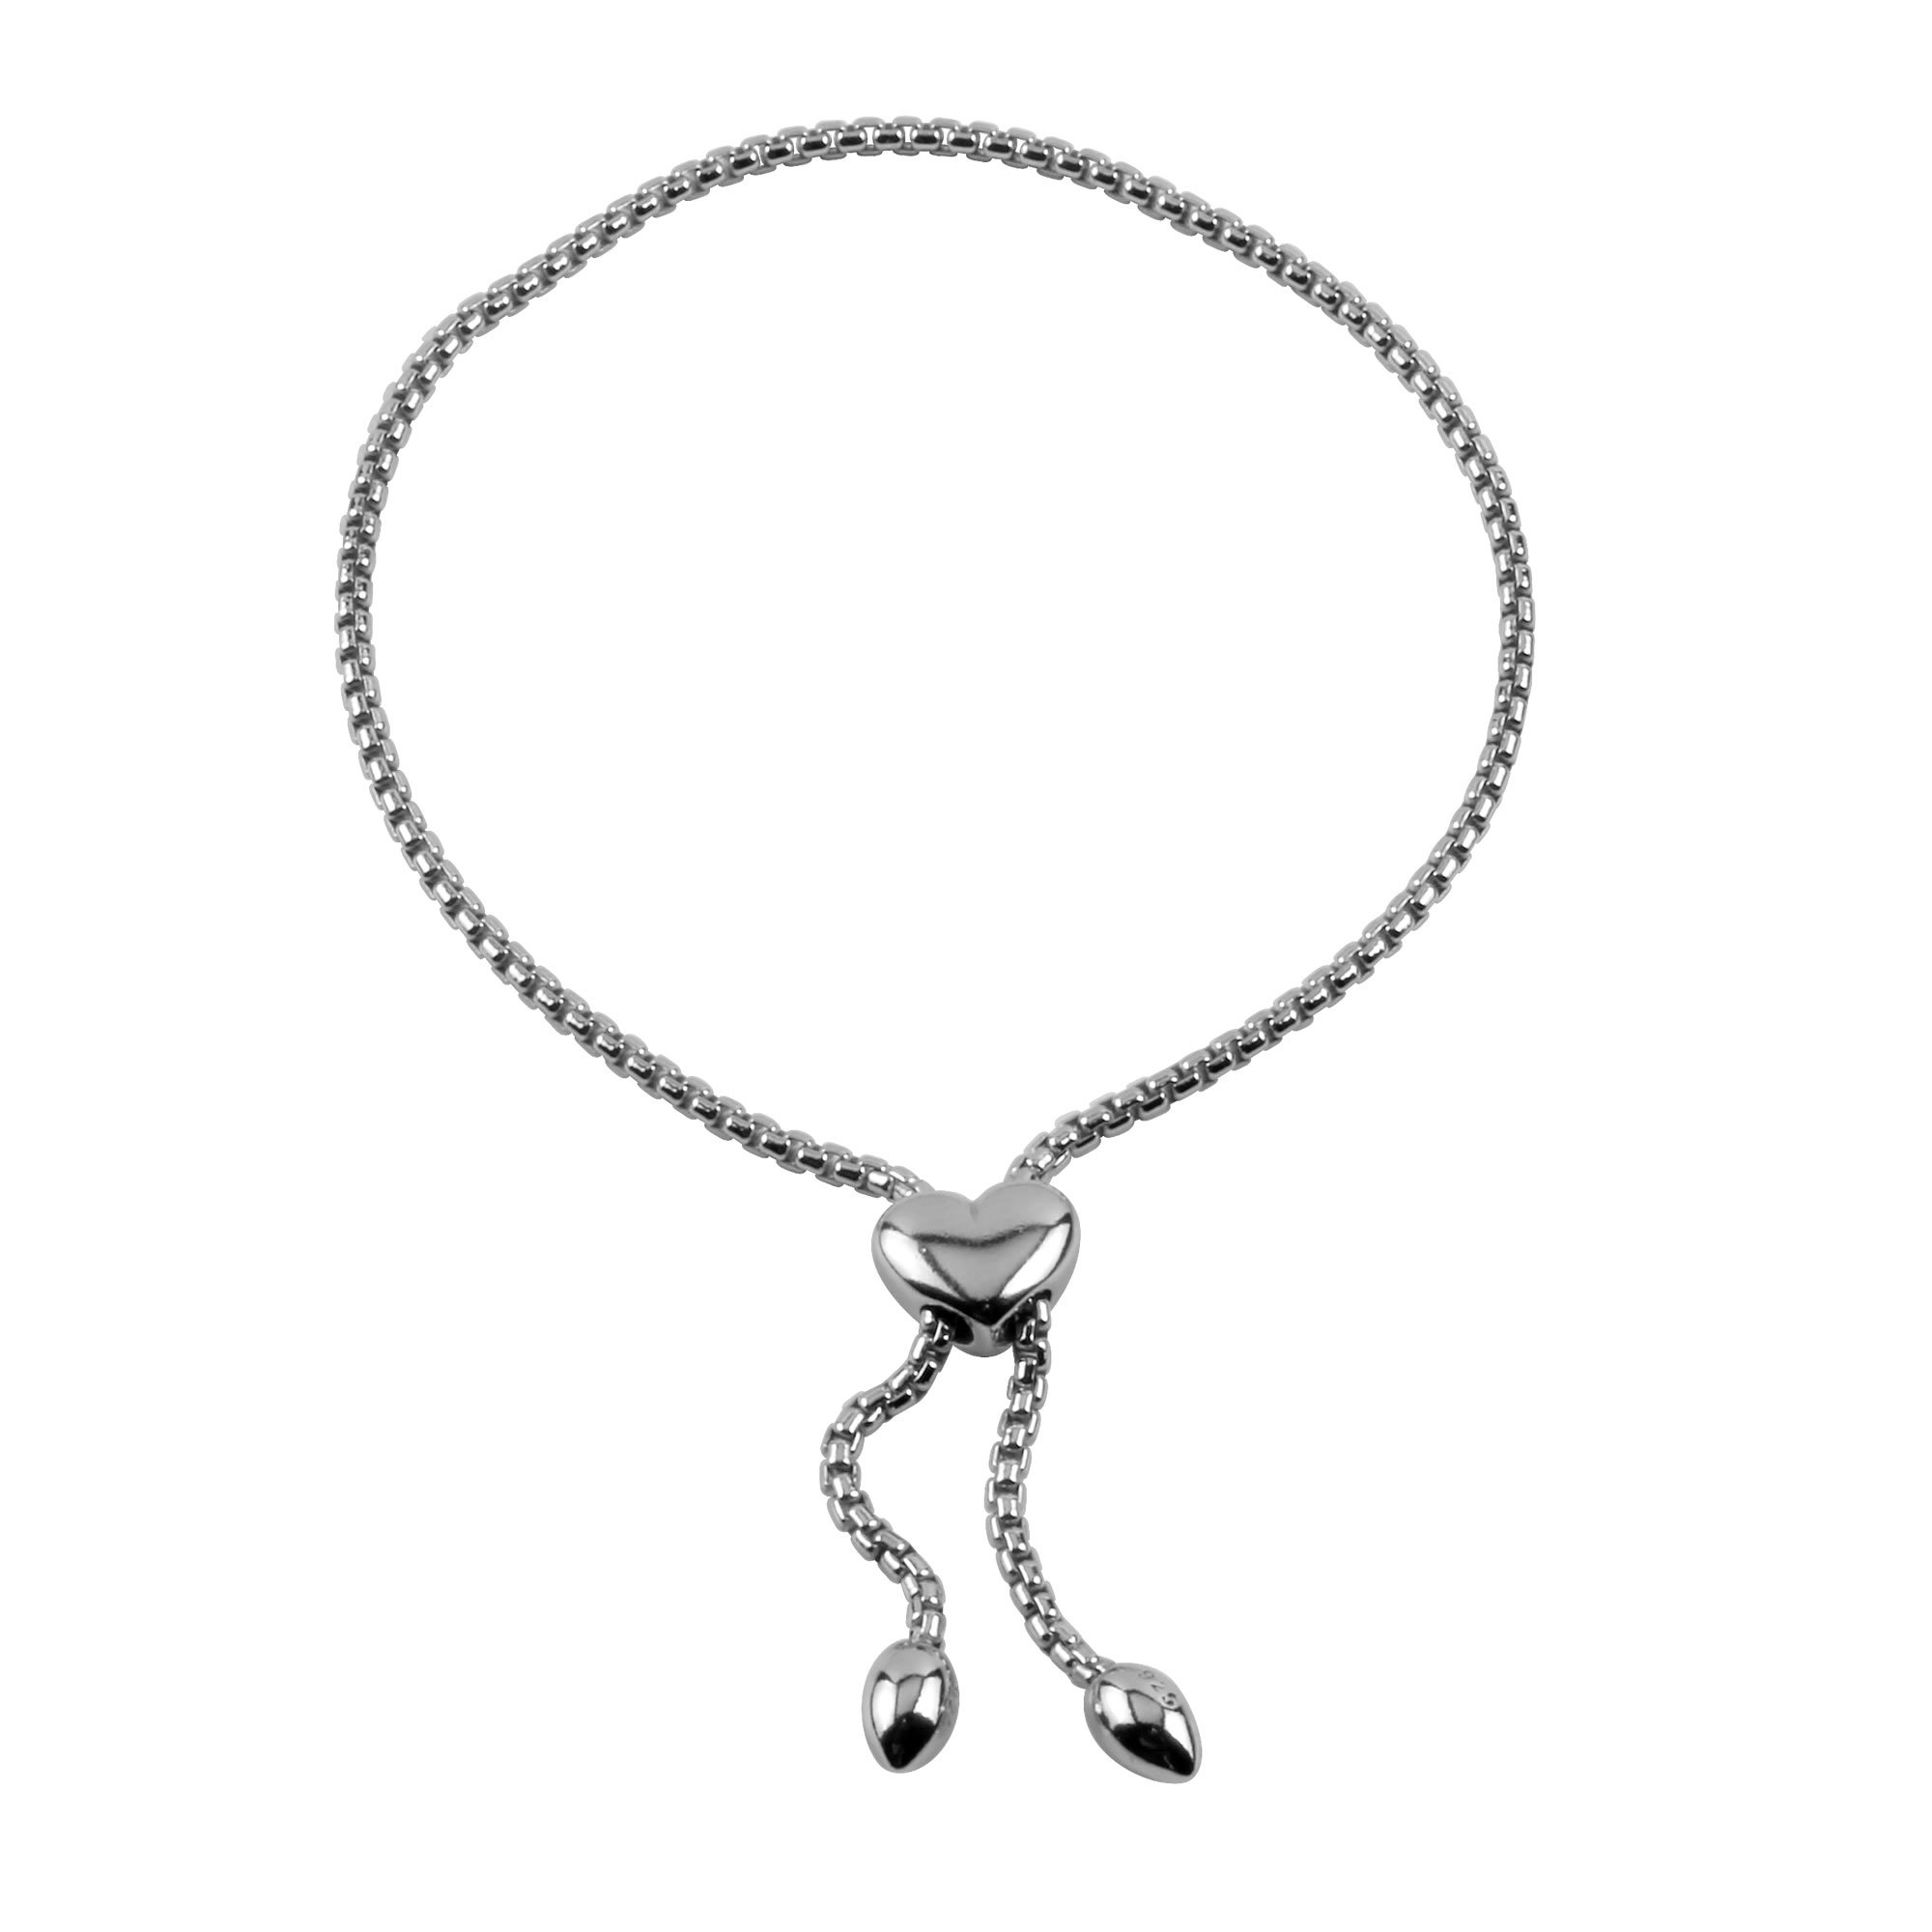 silver adjustable bracelet